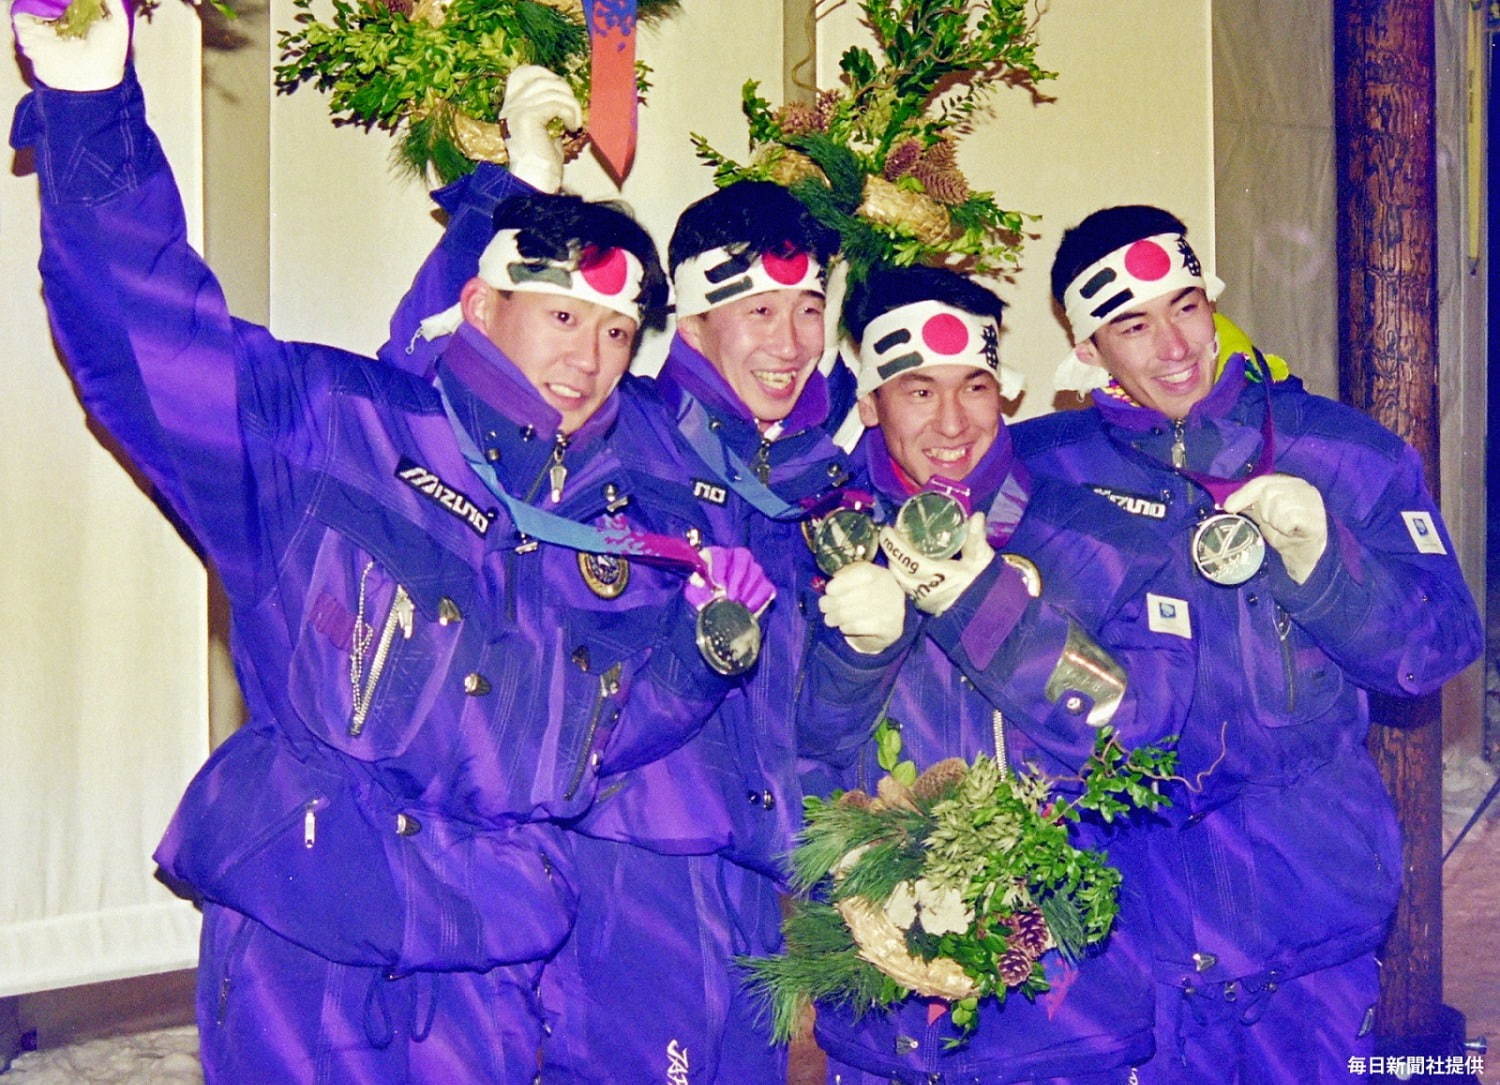 1994 年リレハンメル五輪・スキージャンプ団体銀メダル受賞写真
※毎日新聞社提供